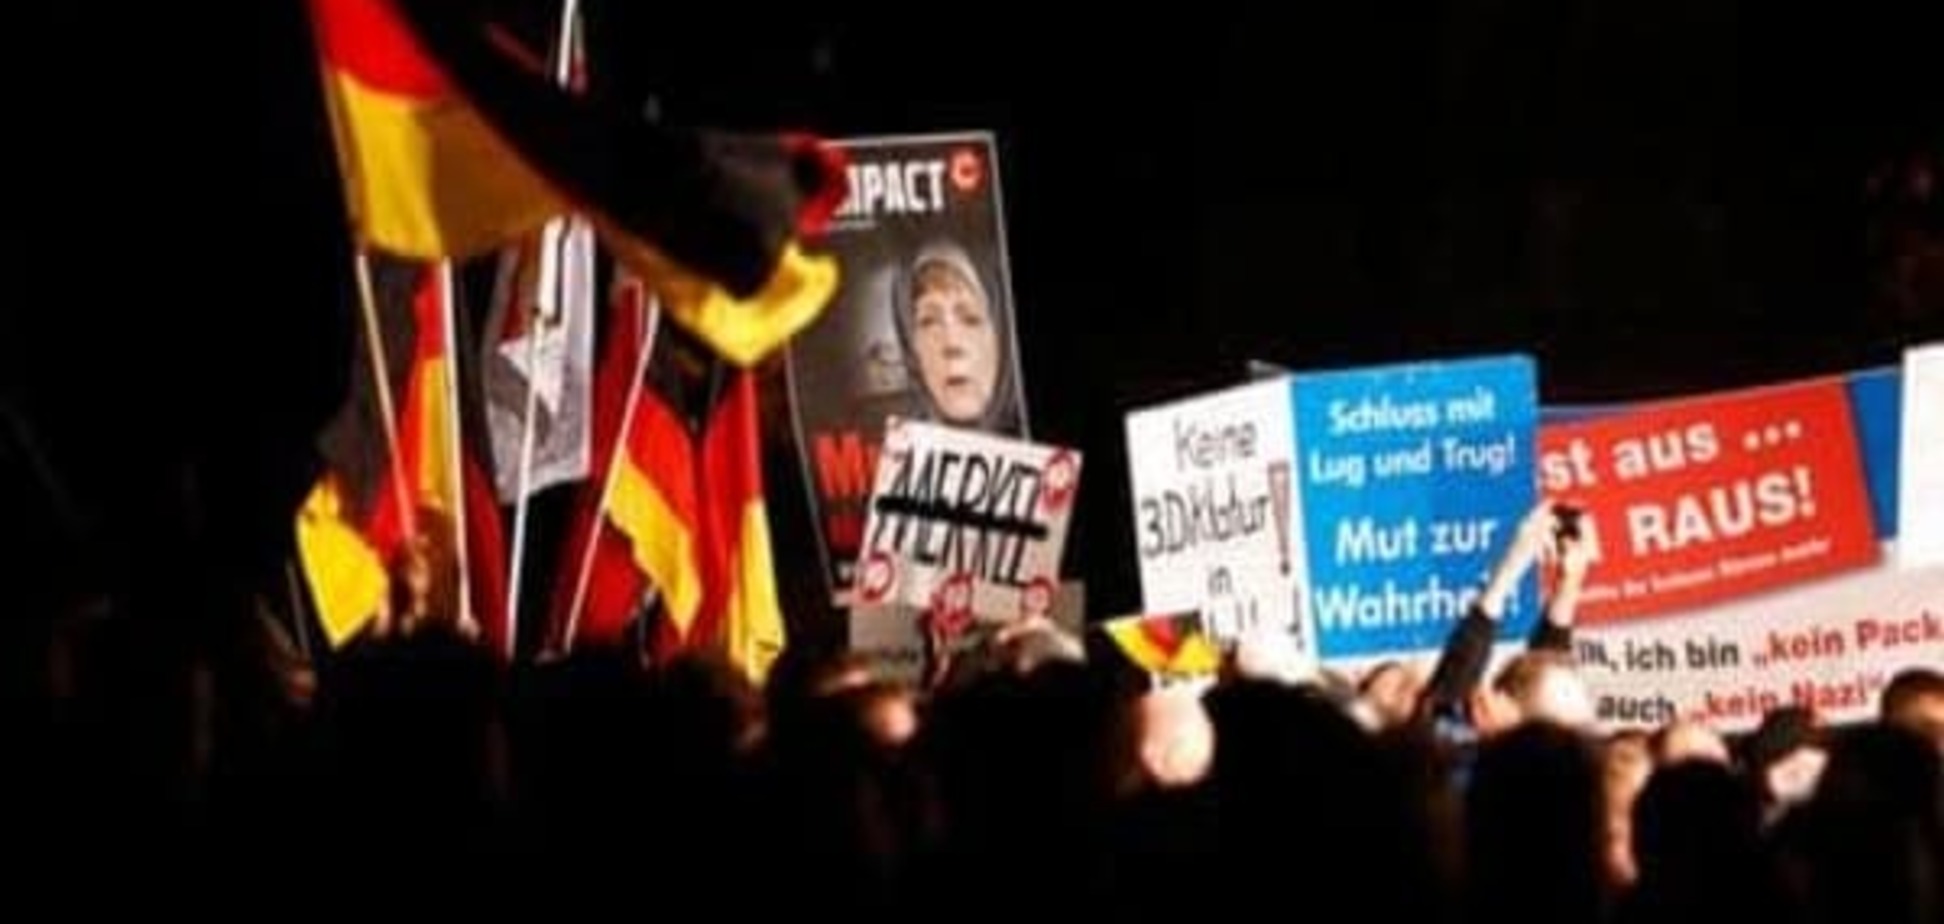 Немецкий эксперт: С правыми радикалами должен говорить прокурор